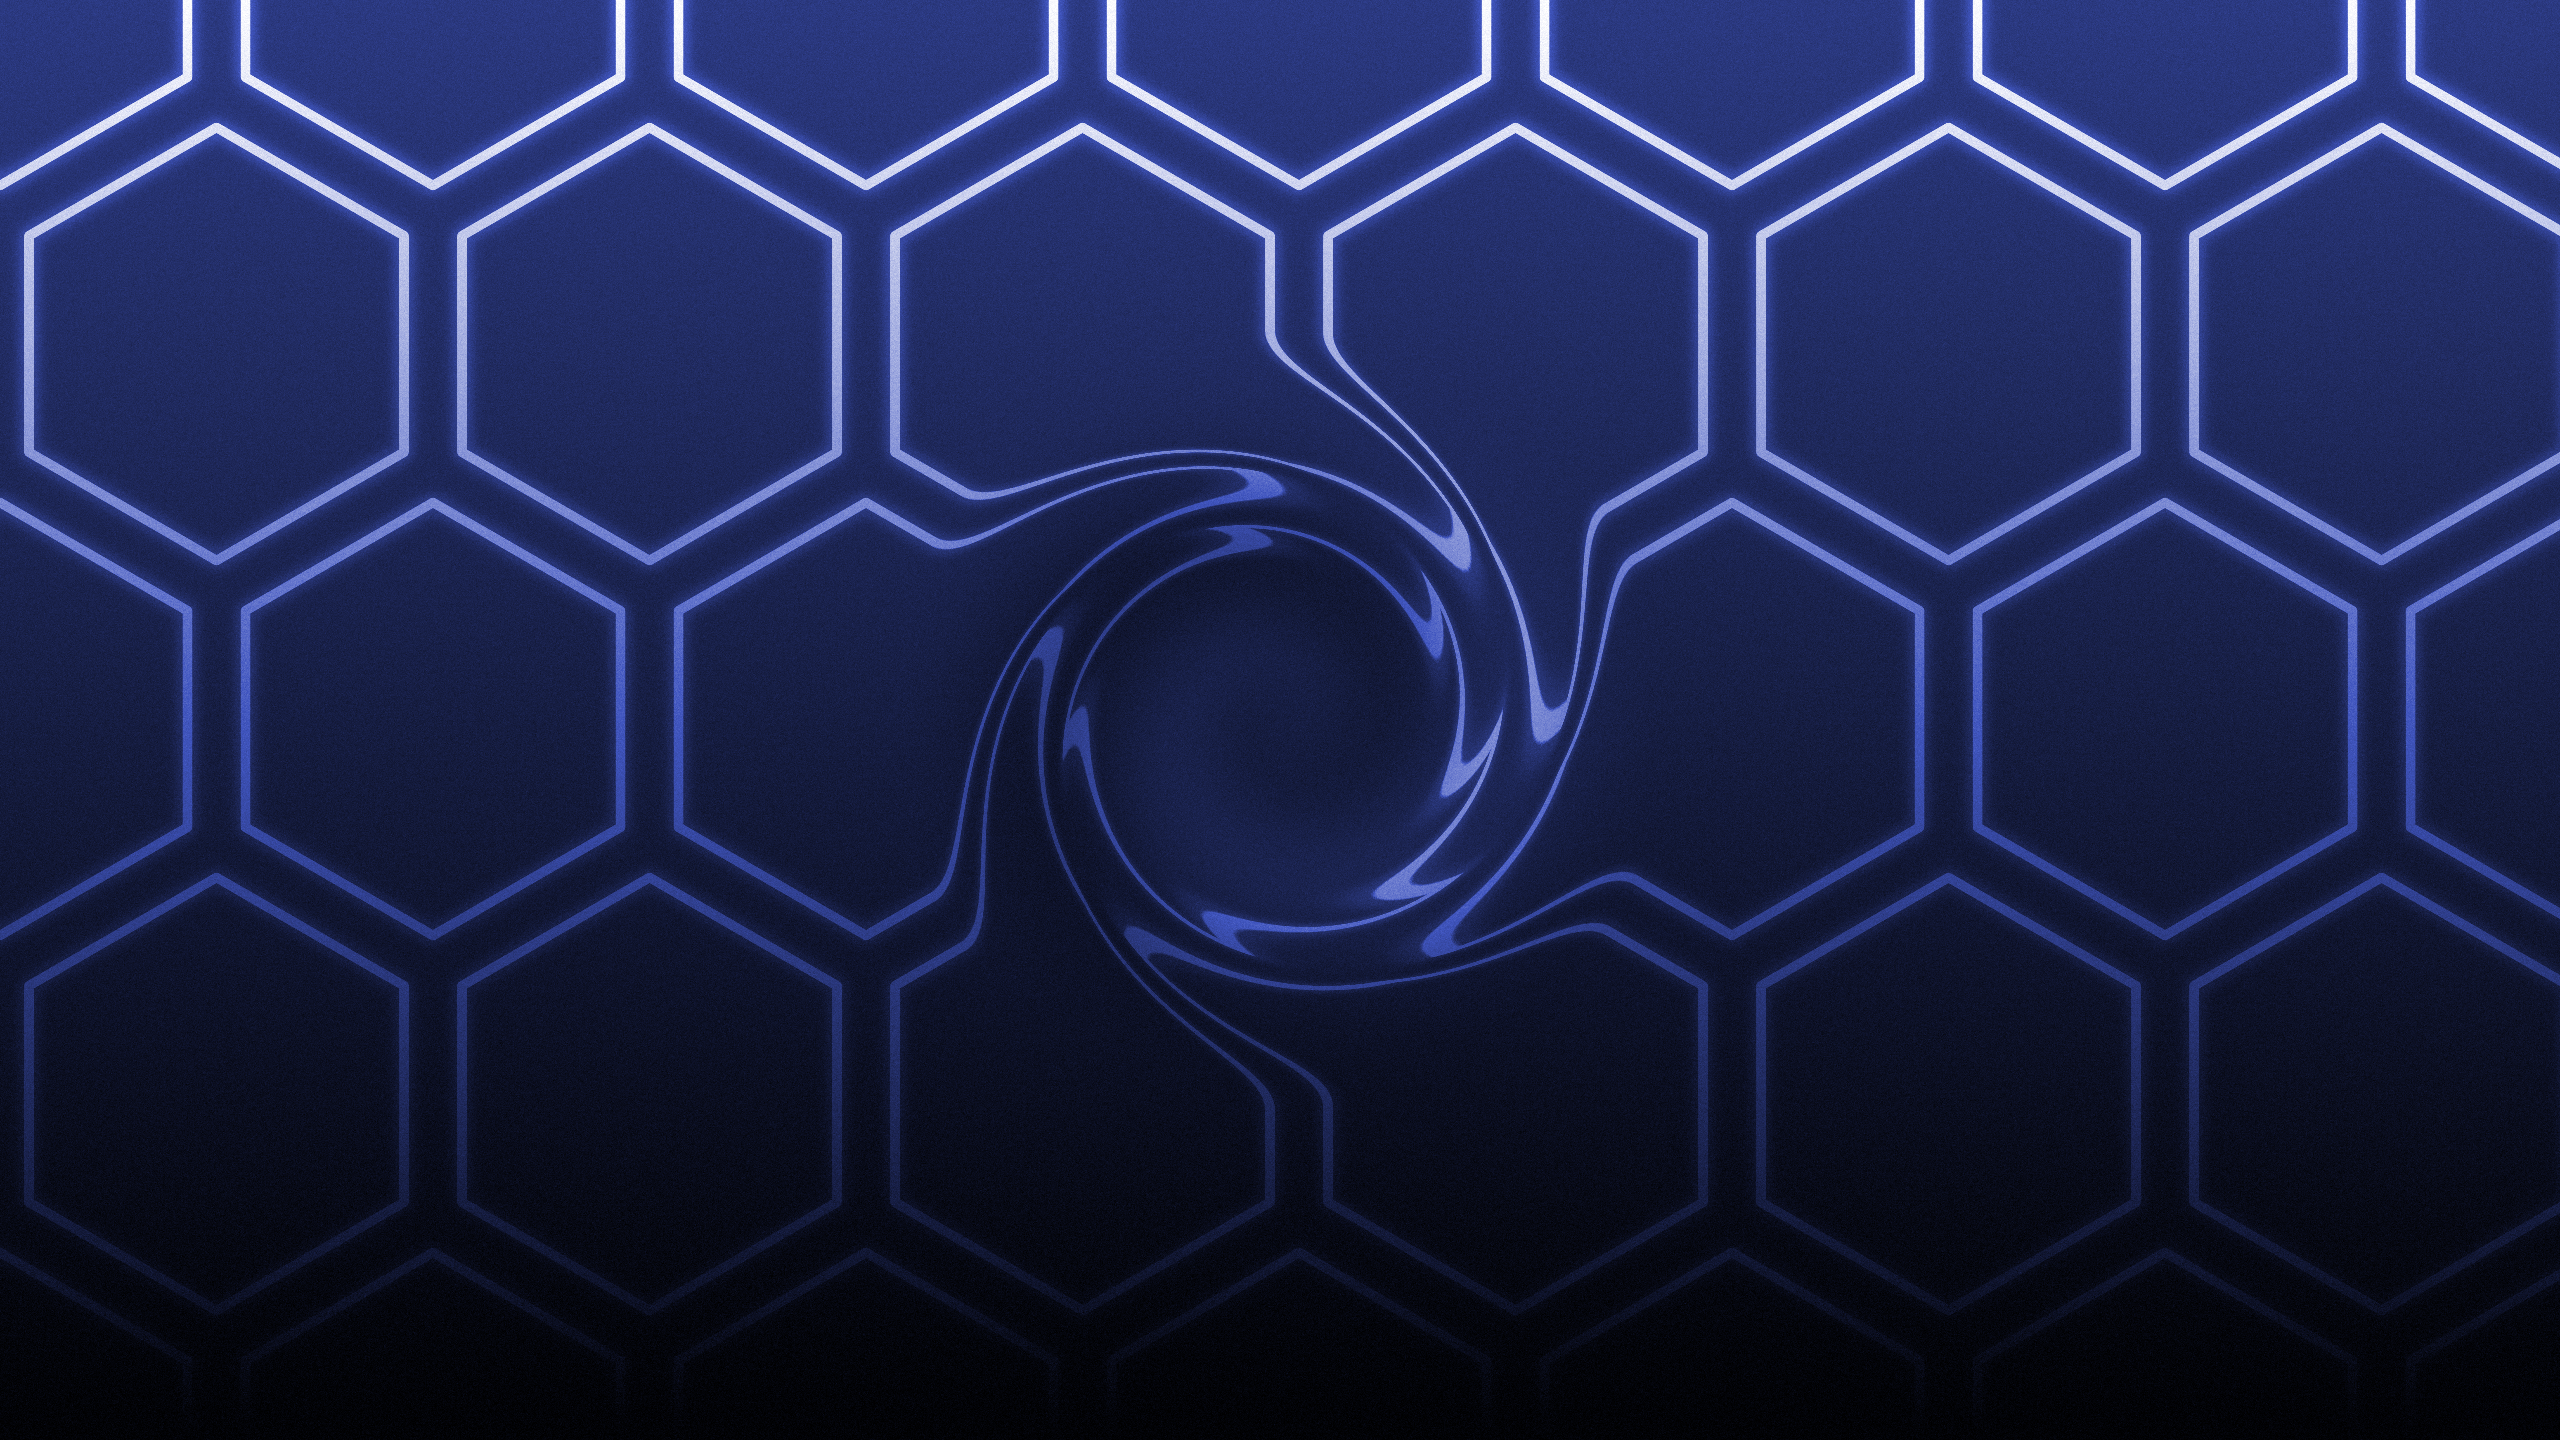 Hexagon Pattern Grid Neon Spiral Grain Simple Background Minimalism Digital Art 2560x1440